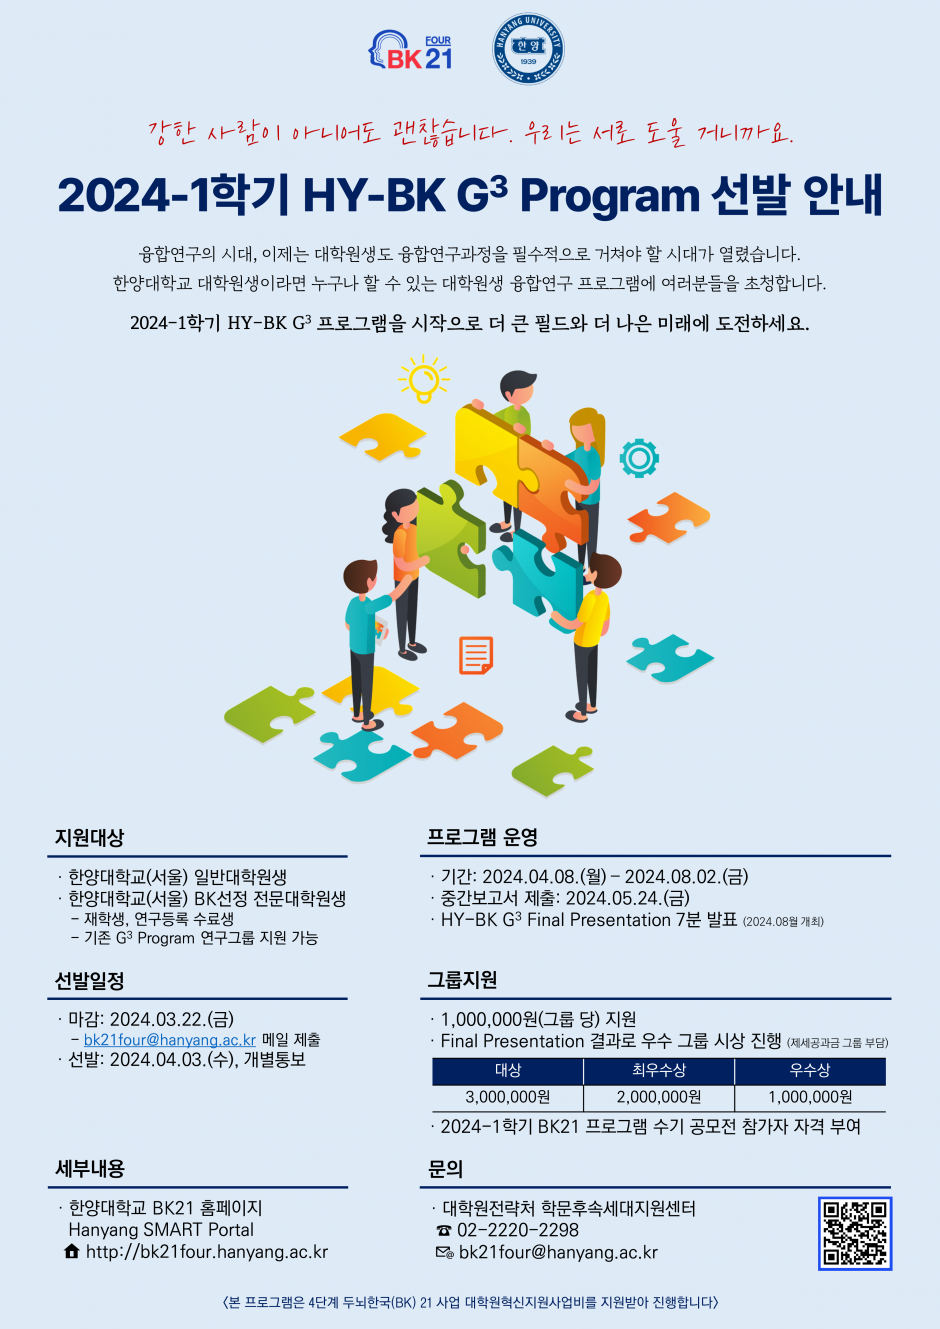 붙임 3. 2024-1학기 HY-BK G3 Program 포스터